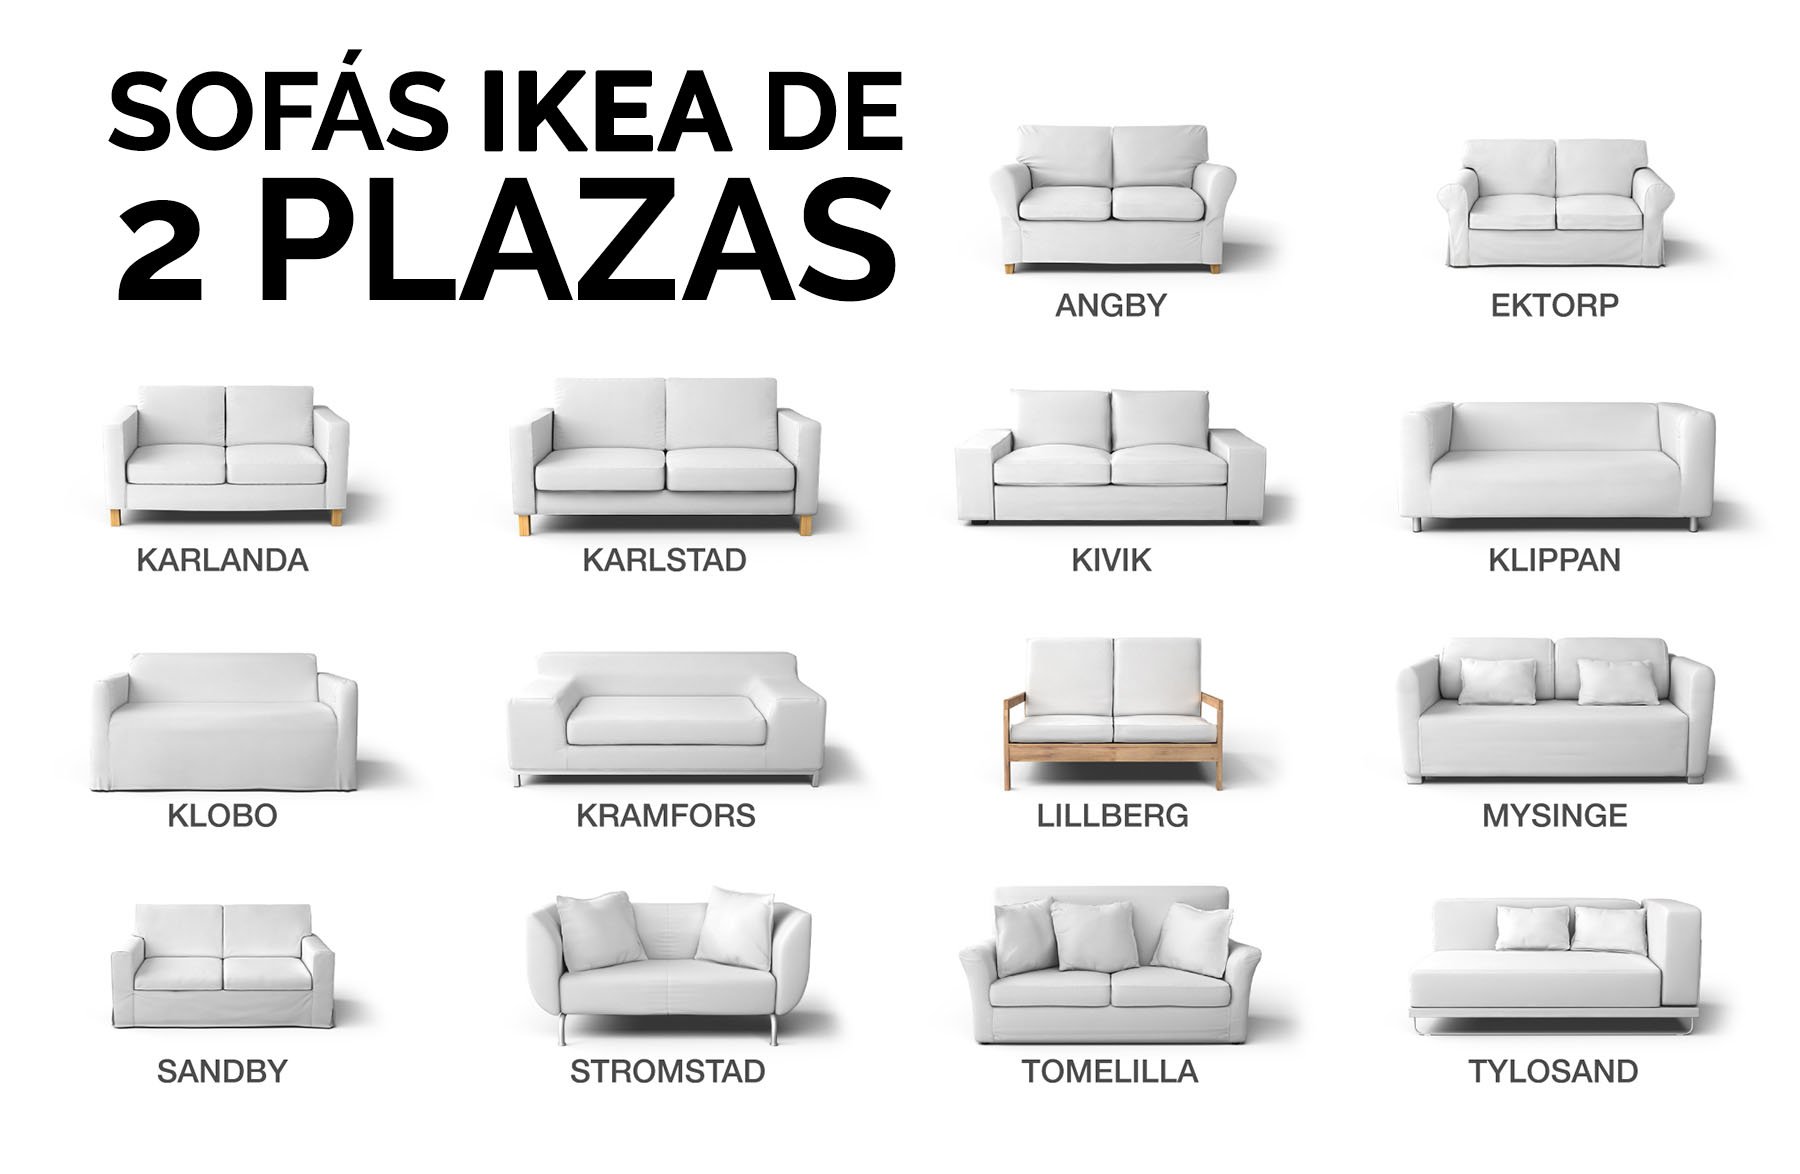 Martin Luther King Junior solamente Azul Qué sofá IKEA de 2 plazas tengo? - Identifica tu sofá IKEA | Blog Comfort  Works - Inspiración y decoración